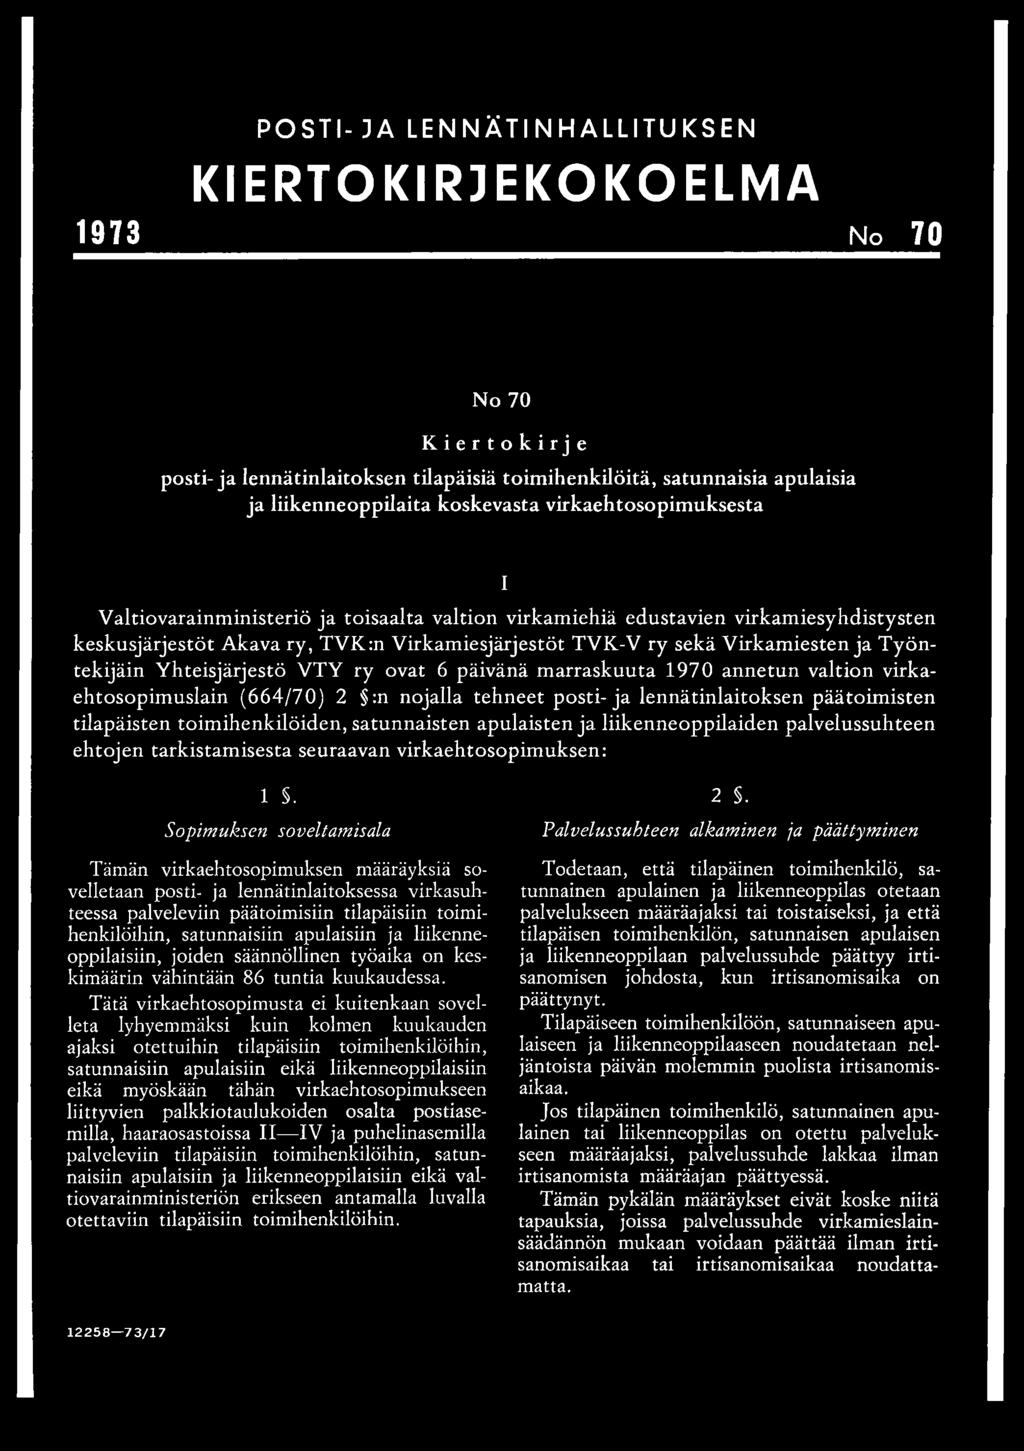 Työntekijäin Yhteisjärjestö VTY ry ovat 6 päivänä marraskuuta 1970 annetun valtion virkaehtosopimuslain (664/70) 2 :n nojalla tehneet posti-ja lennätinlaitoksen päätoimisten tilapäisten